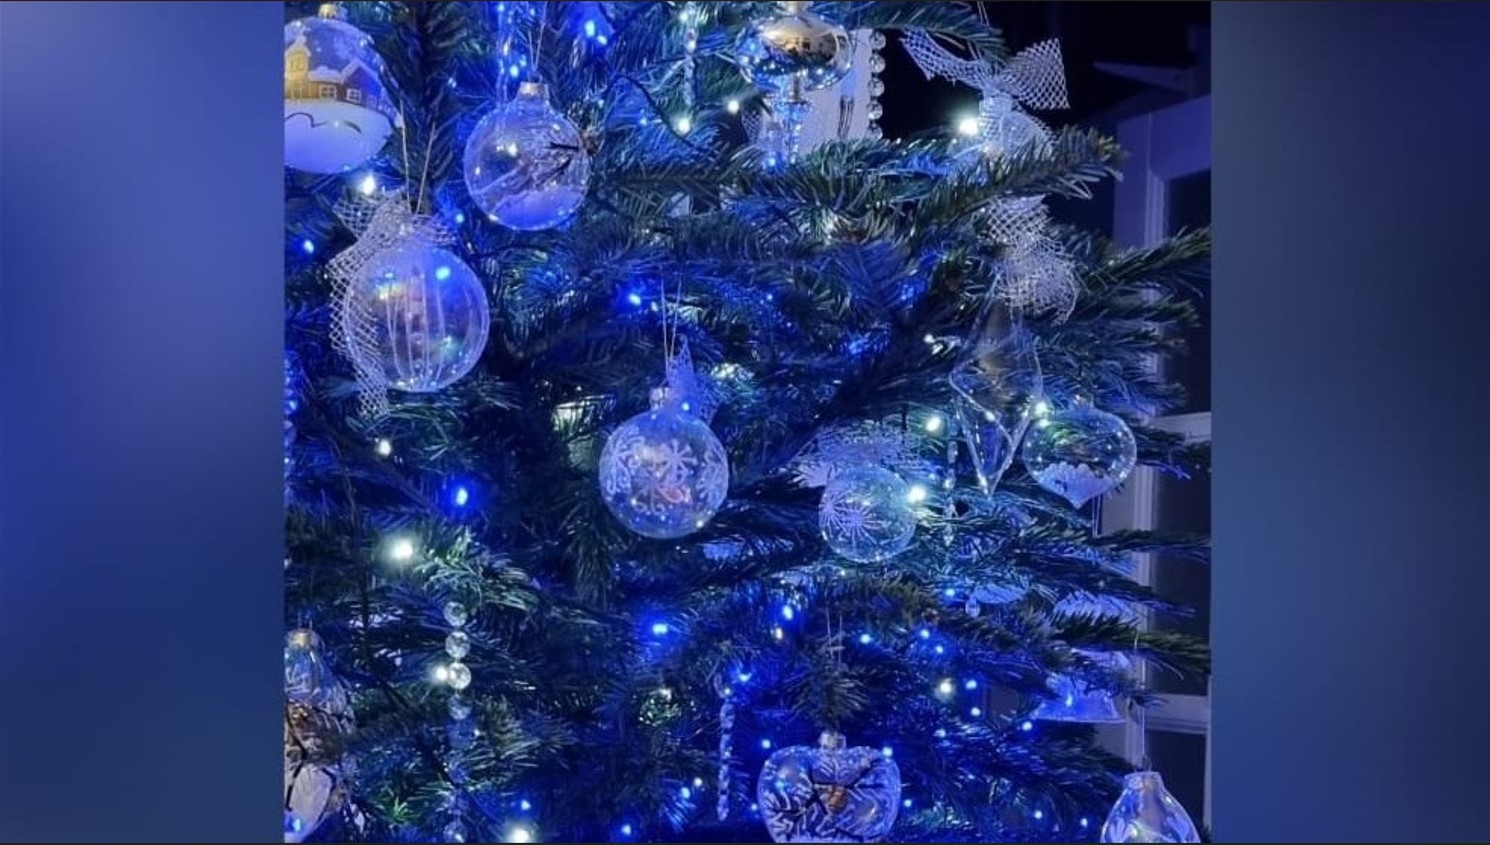 Dal baule di Nadia: l'albero di Natale, quando le palline di plastica non esistevano